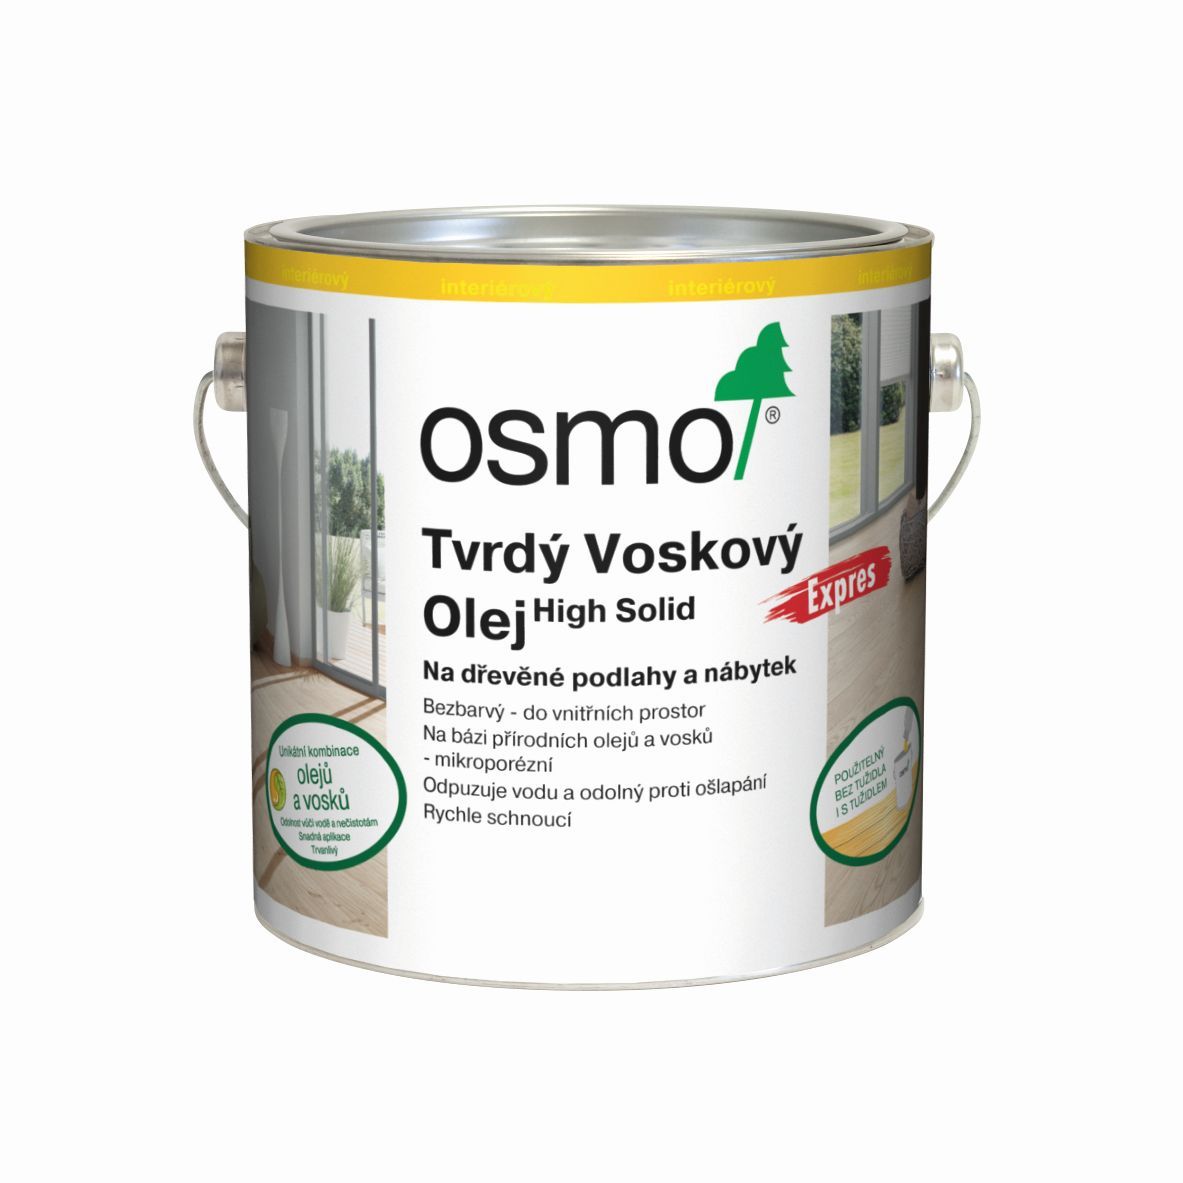 OSMO 3332 Tvrd voskov olej Express Bezbarv hedvbn polomat 2,5l